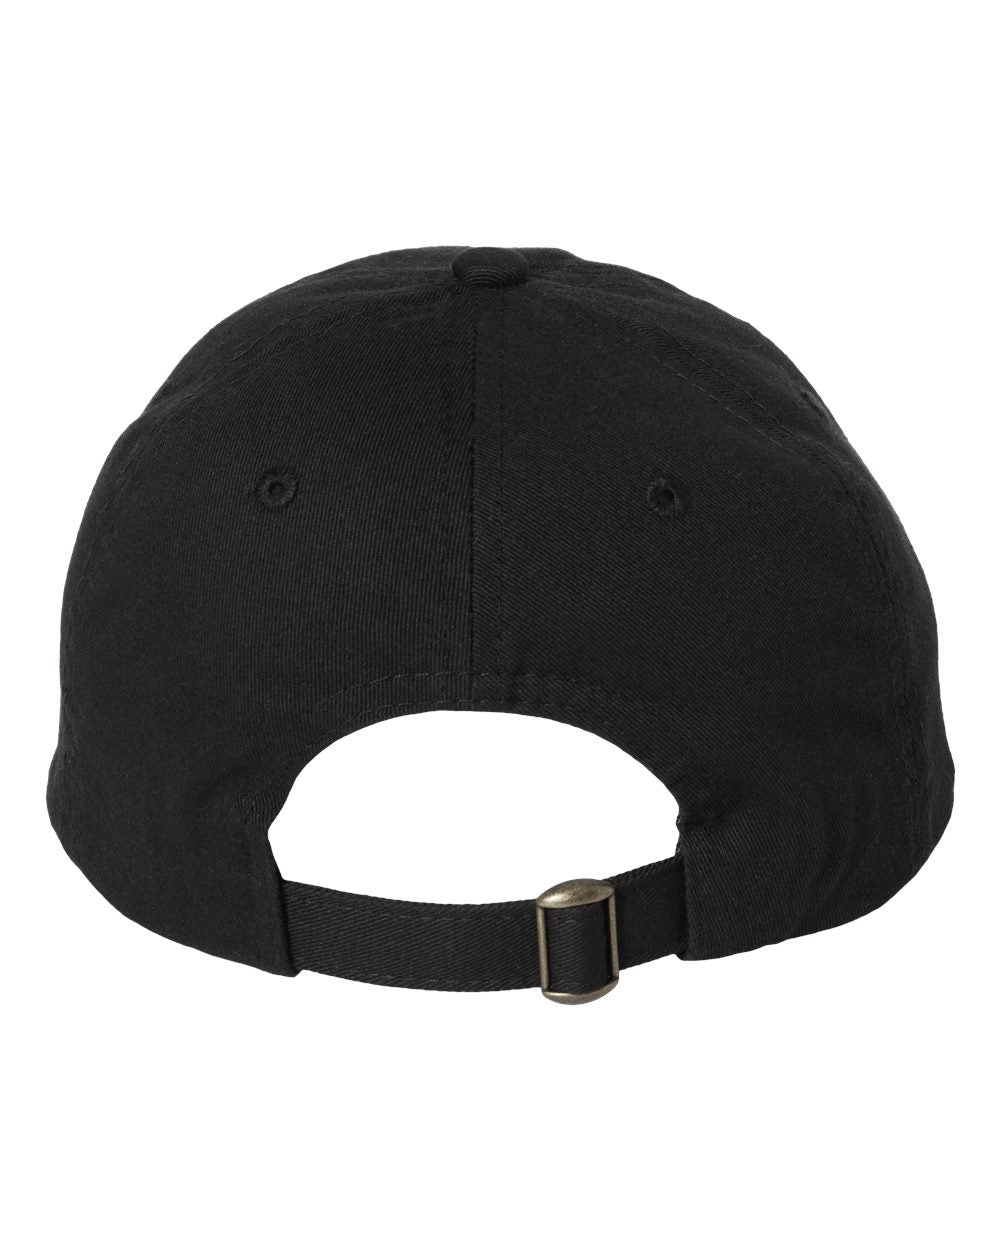 Value Cap Dad Hat